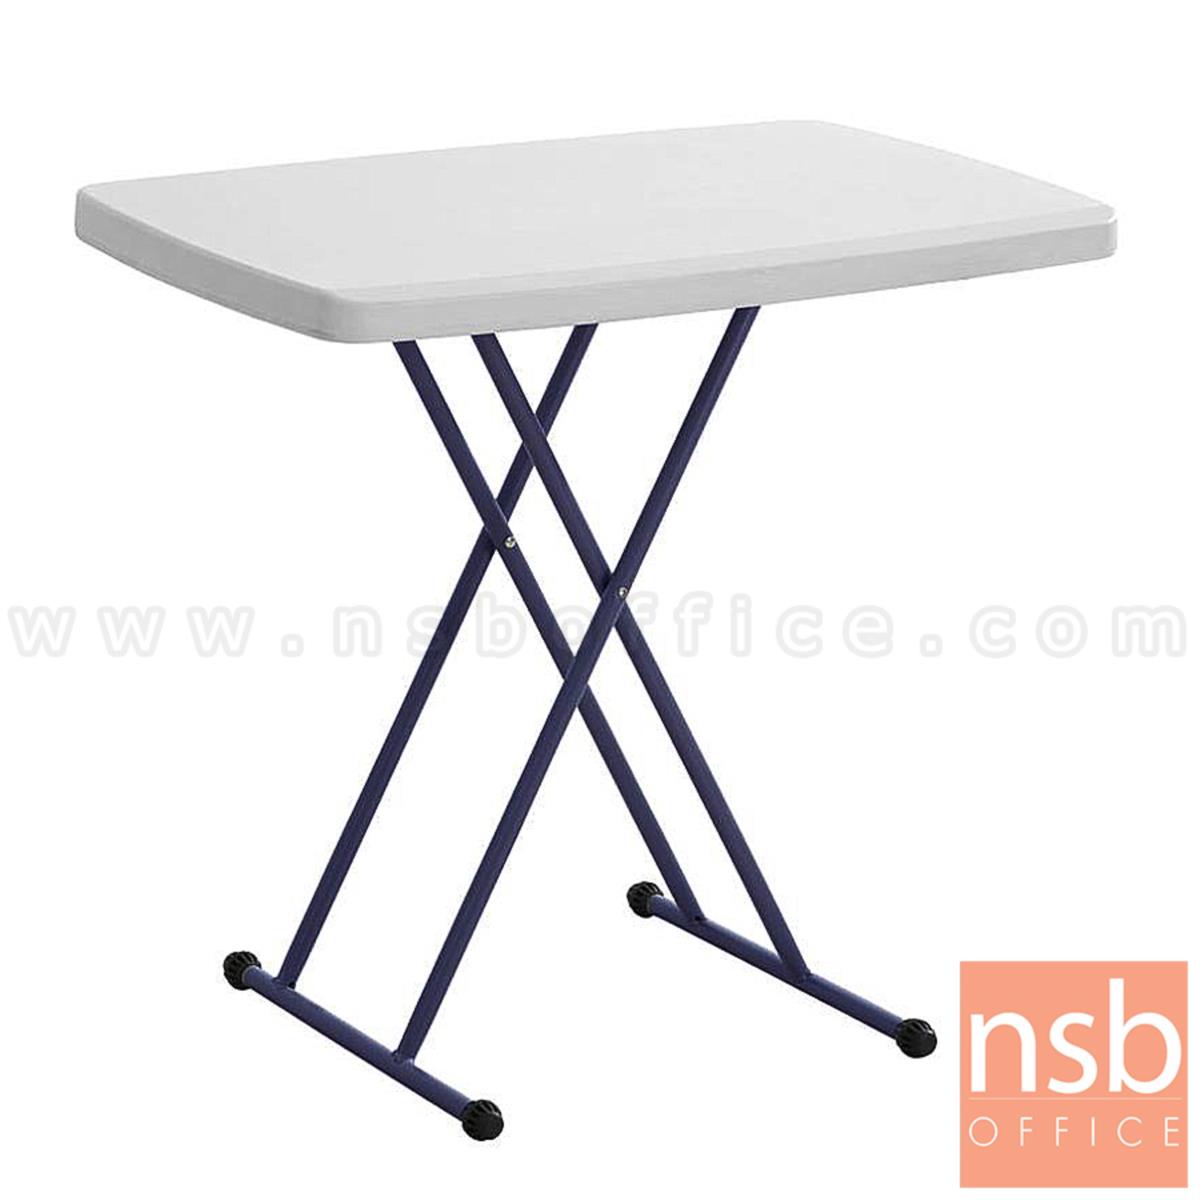 A19A020:โต๊ะพับหน้าพลาสติก รุ่น PL-PPF  ขนาด 76W cm.  ขาเตารีดอีพ็อกซีเกล็ดเงิน